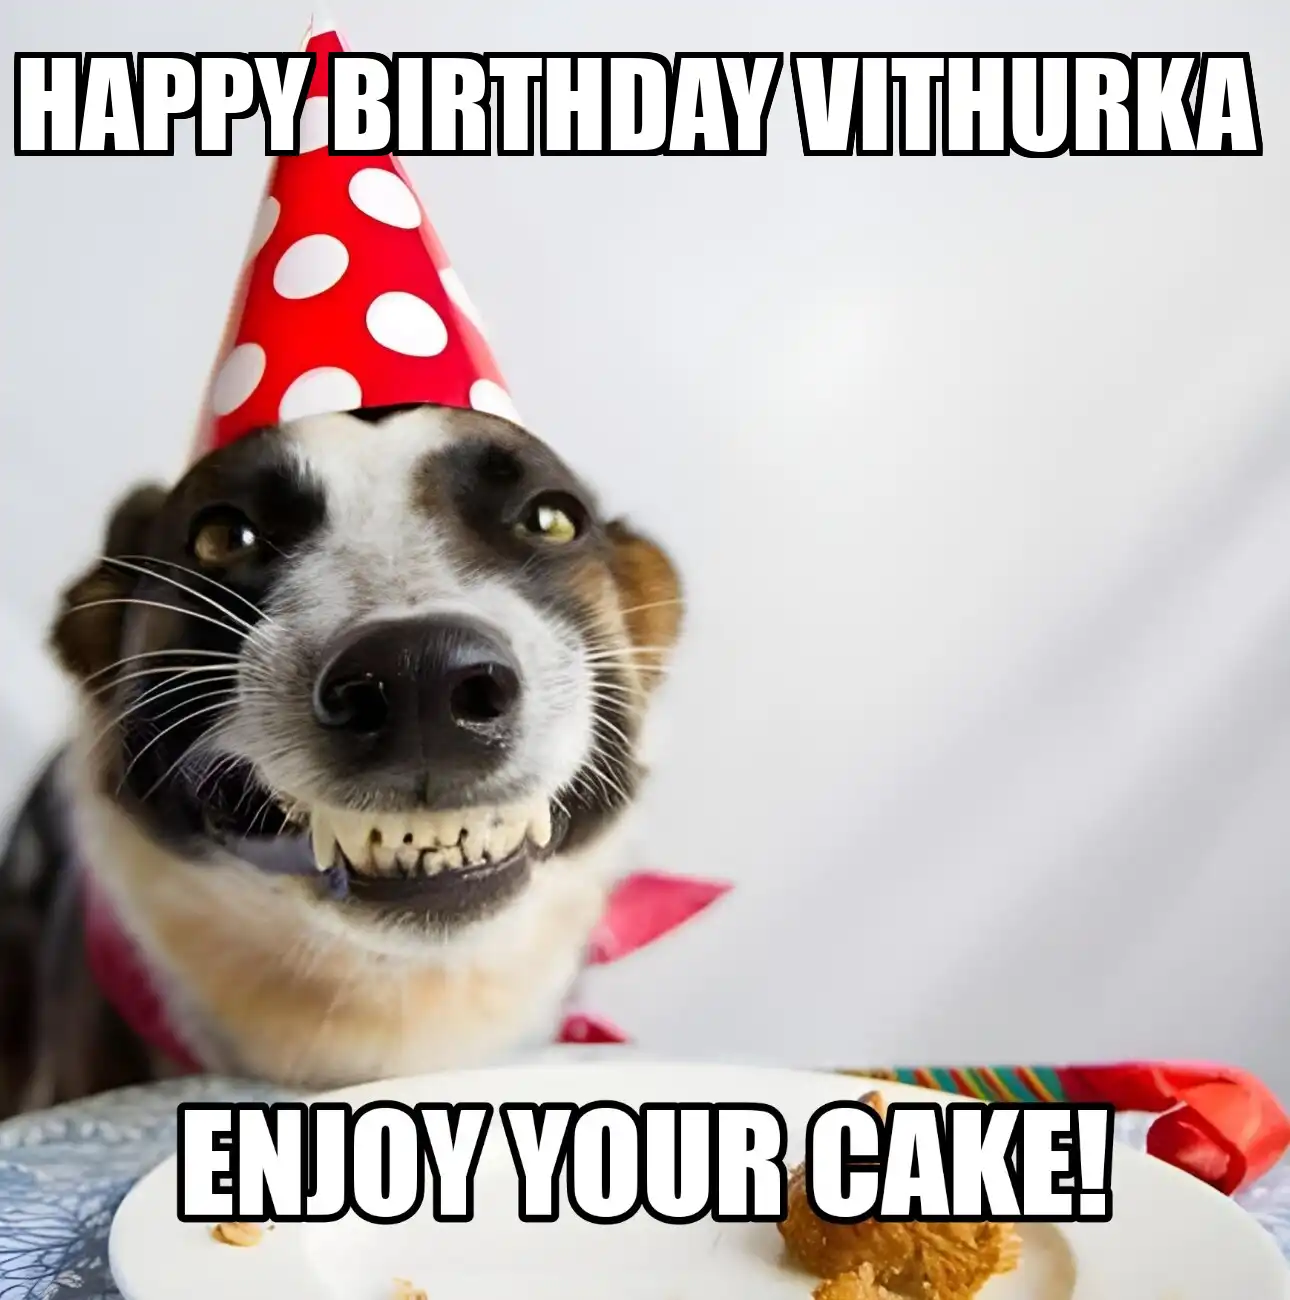 Happy Birthday Vithurka Enjoy Your Cake Dog Meme